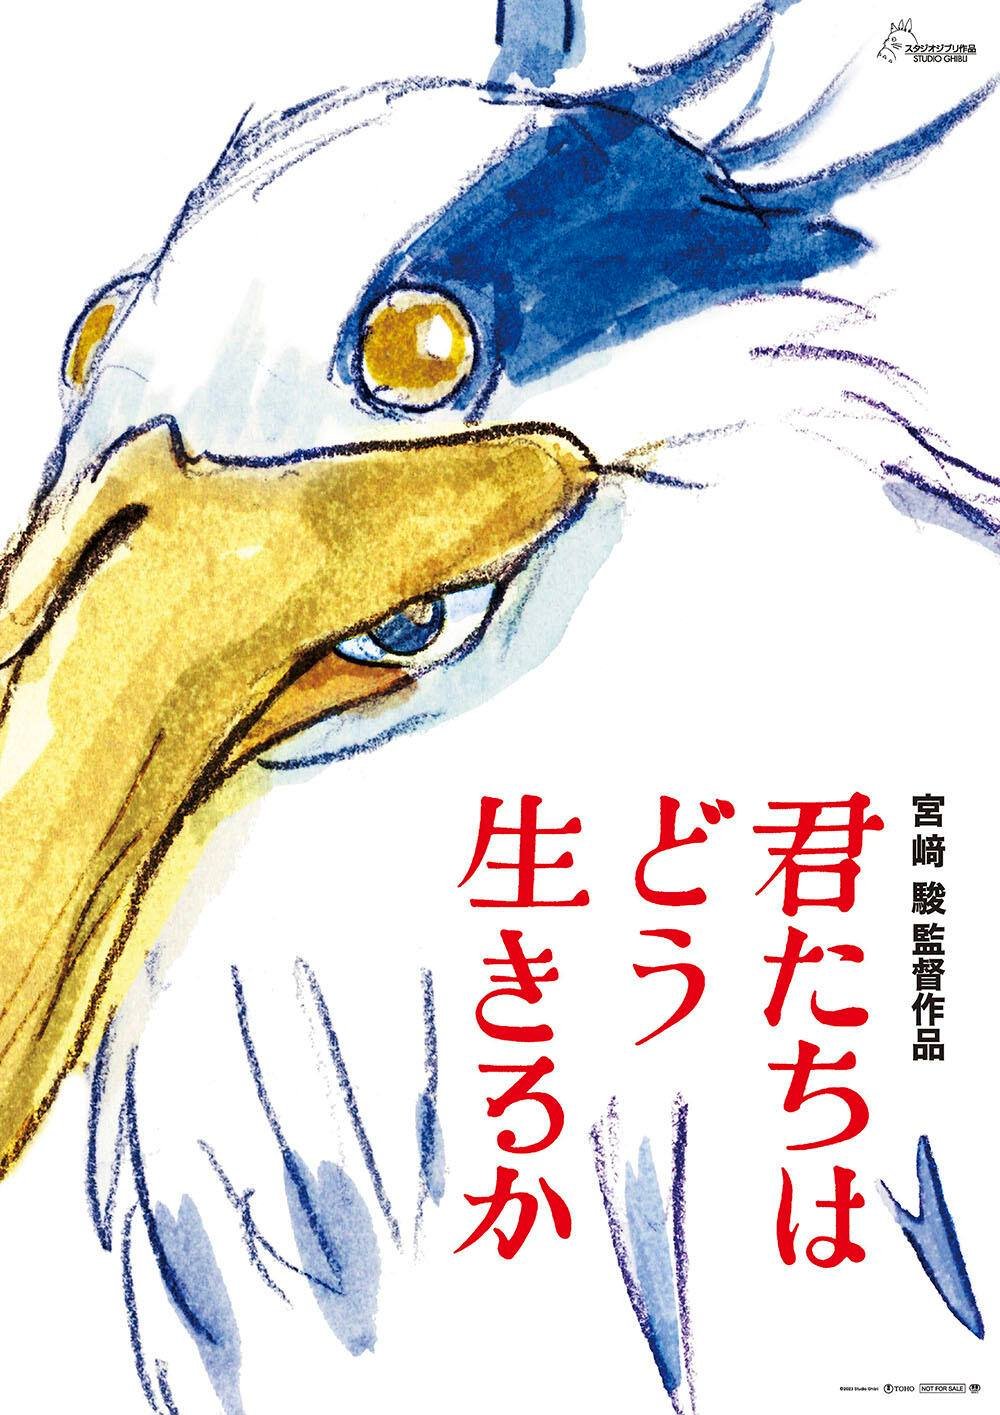 蒼鷺與少年 (日語 IMAX版)電影圖片 - poster_1693530885.jpg